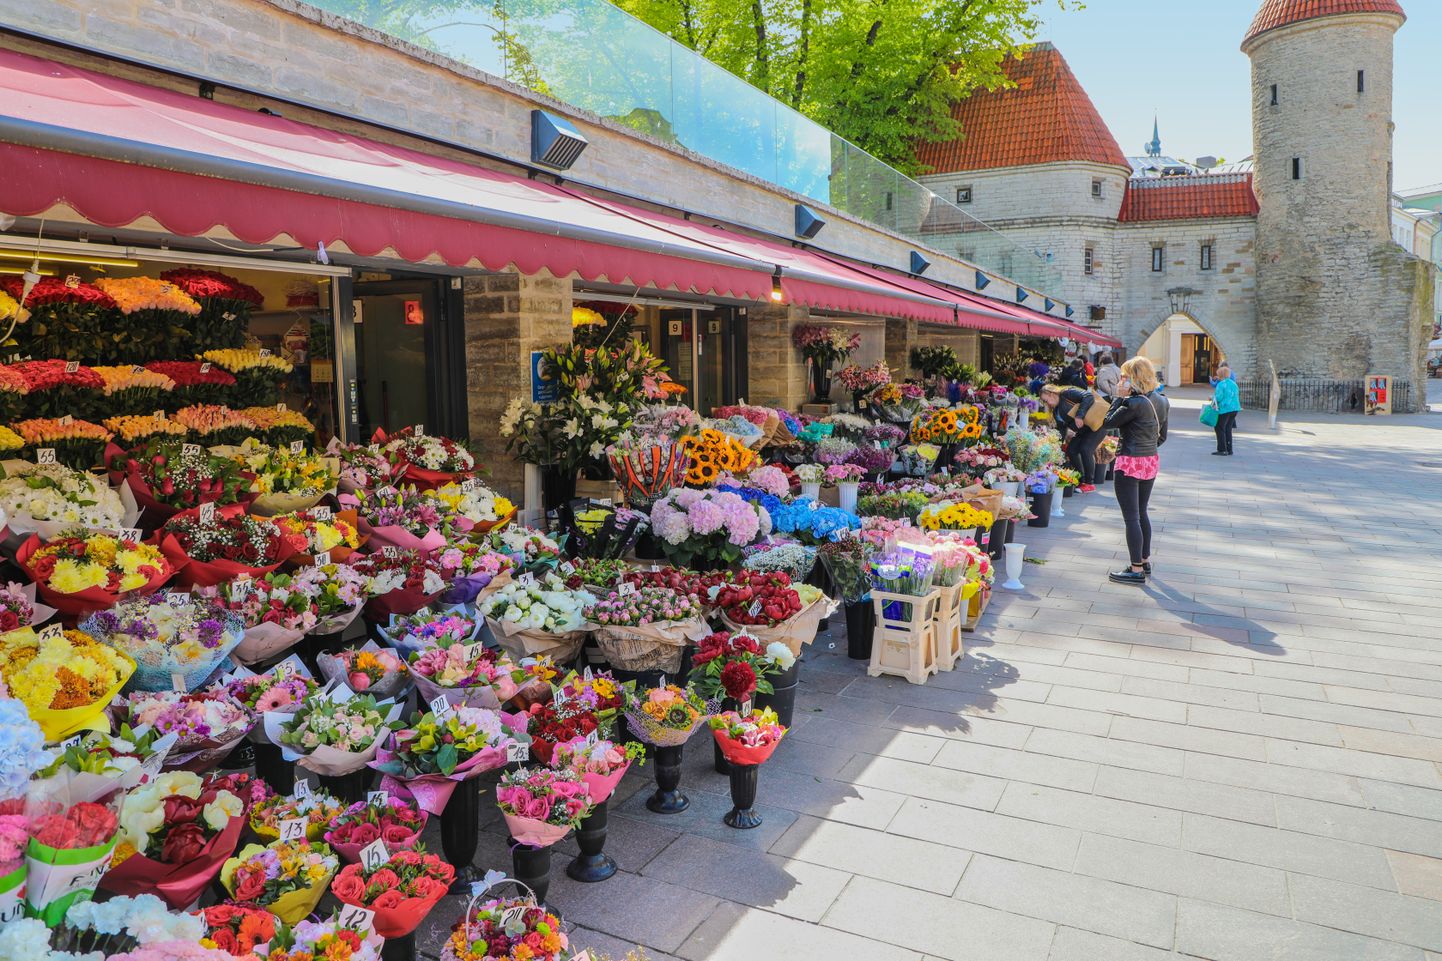 Kevadine lilleturg Viru väravate ees. Pilt on illustreeriv.